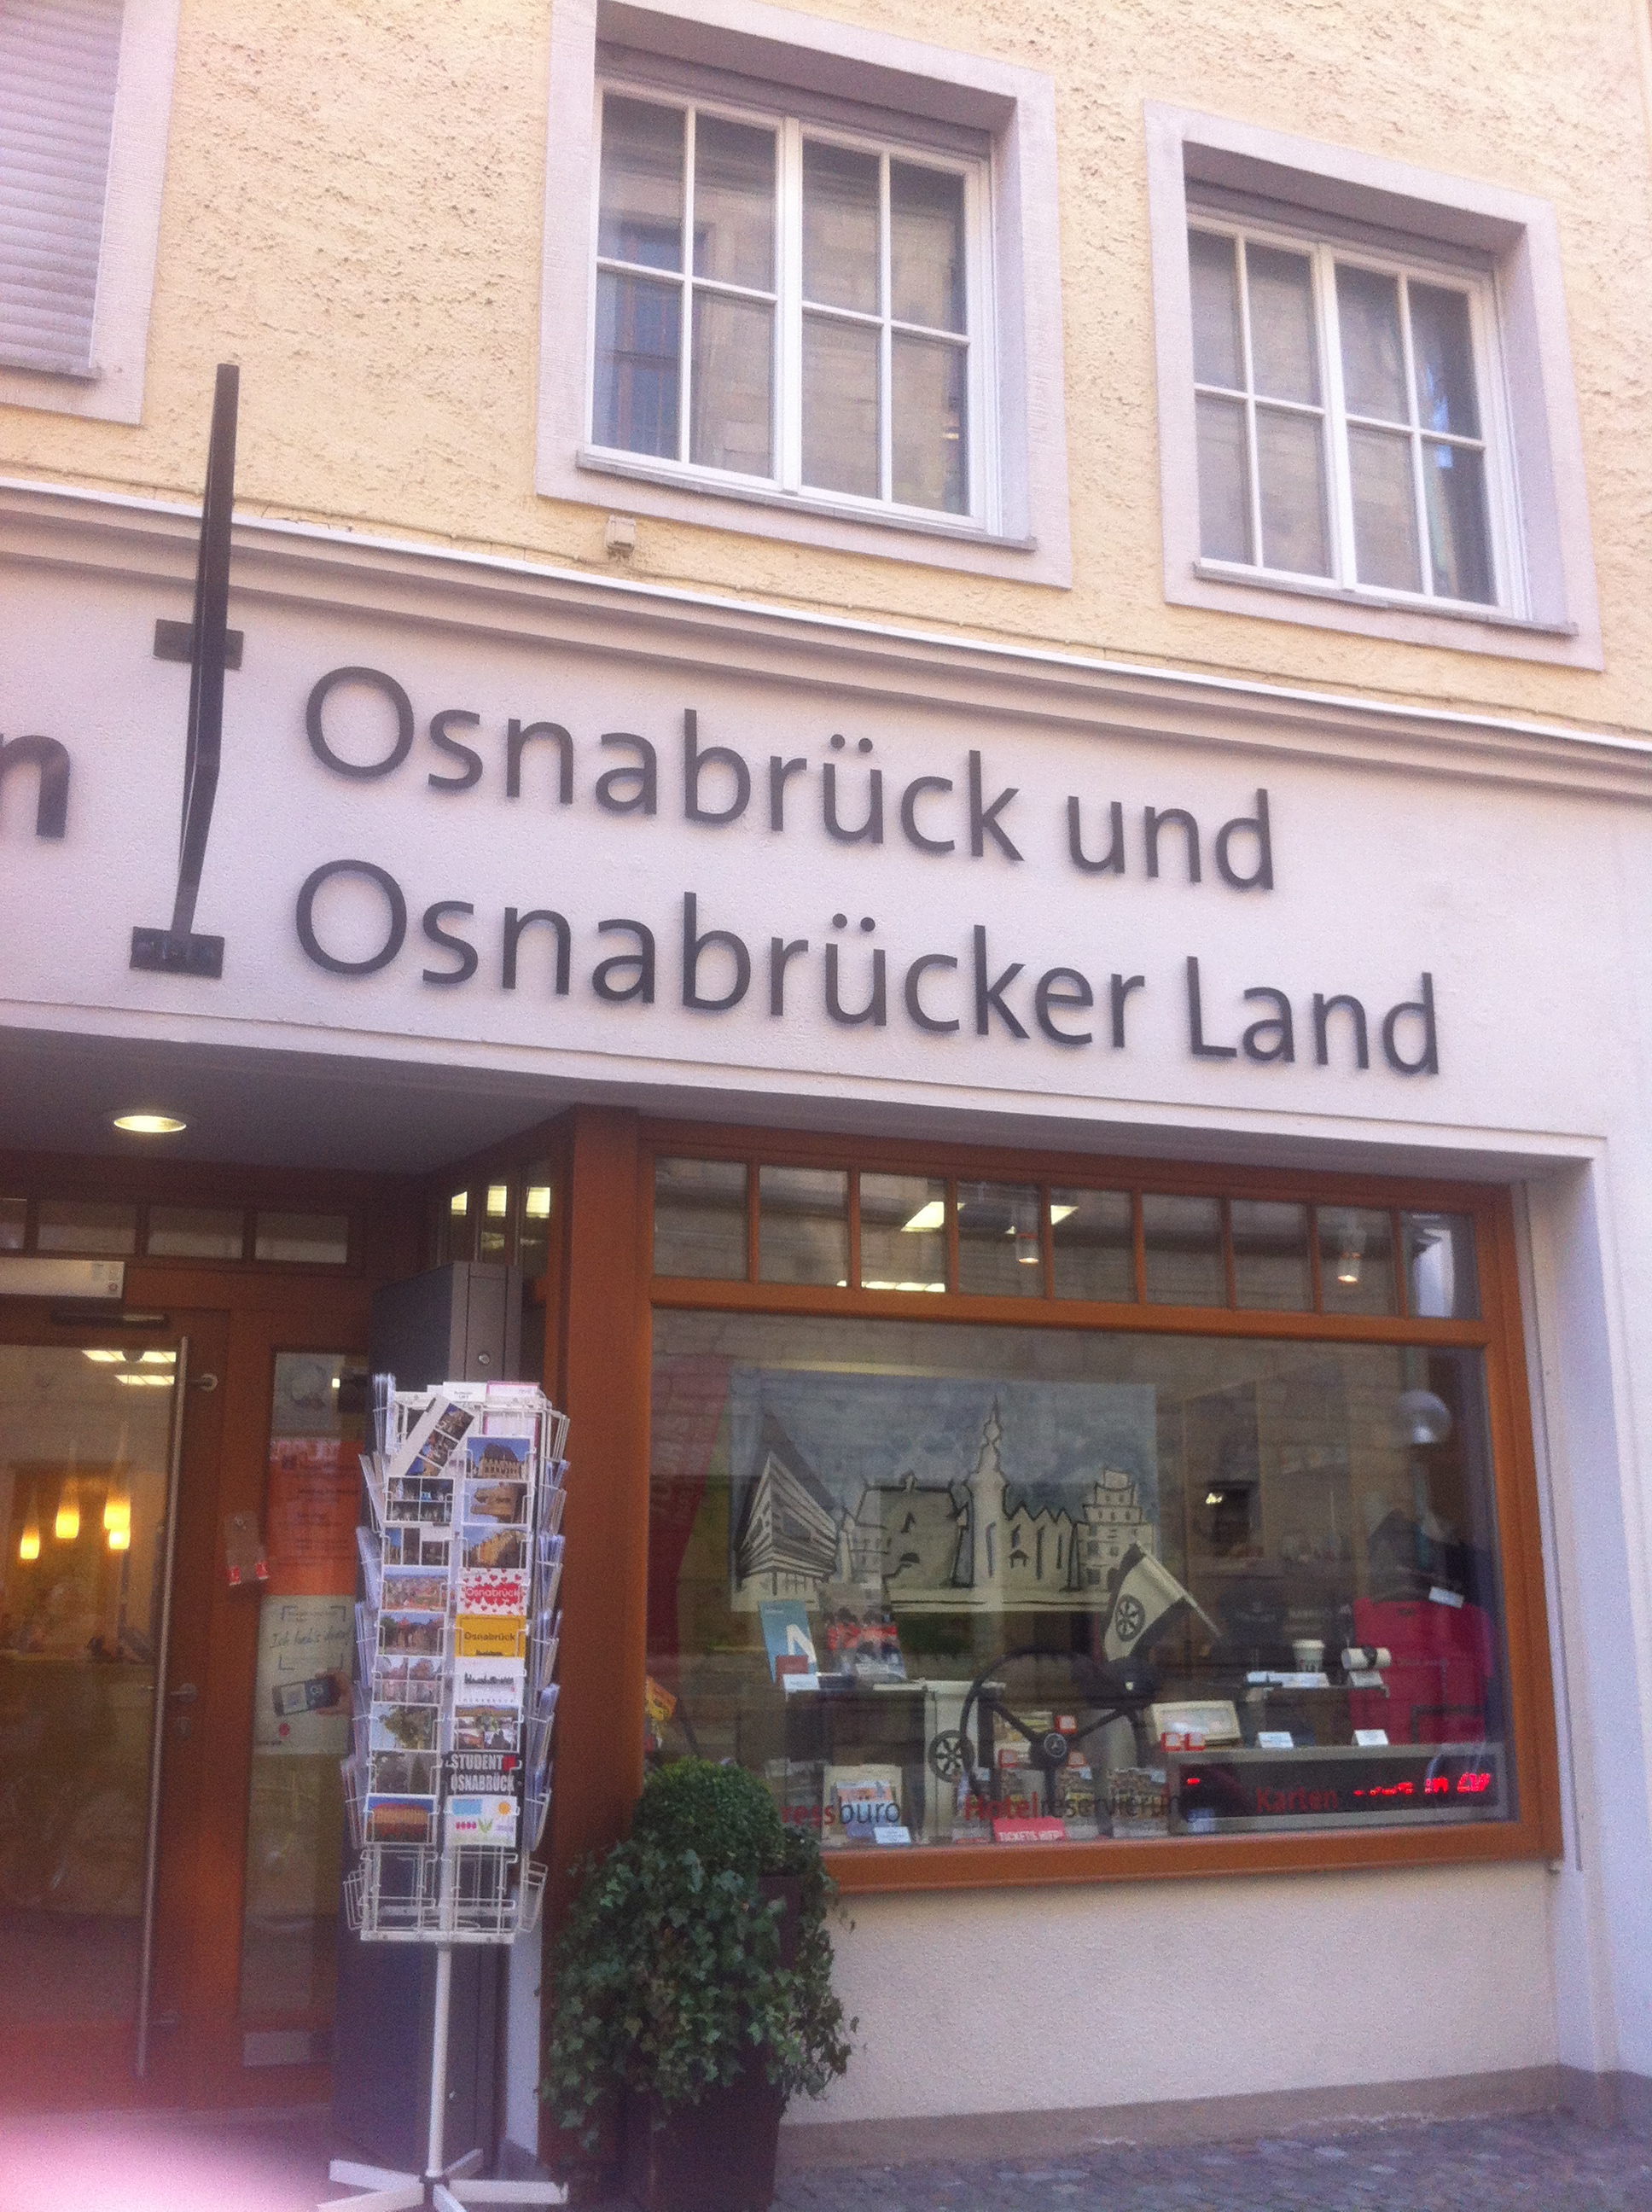 Tourist Information in der Bierstraße von Osnabrück